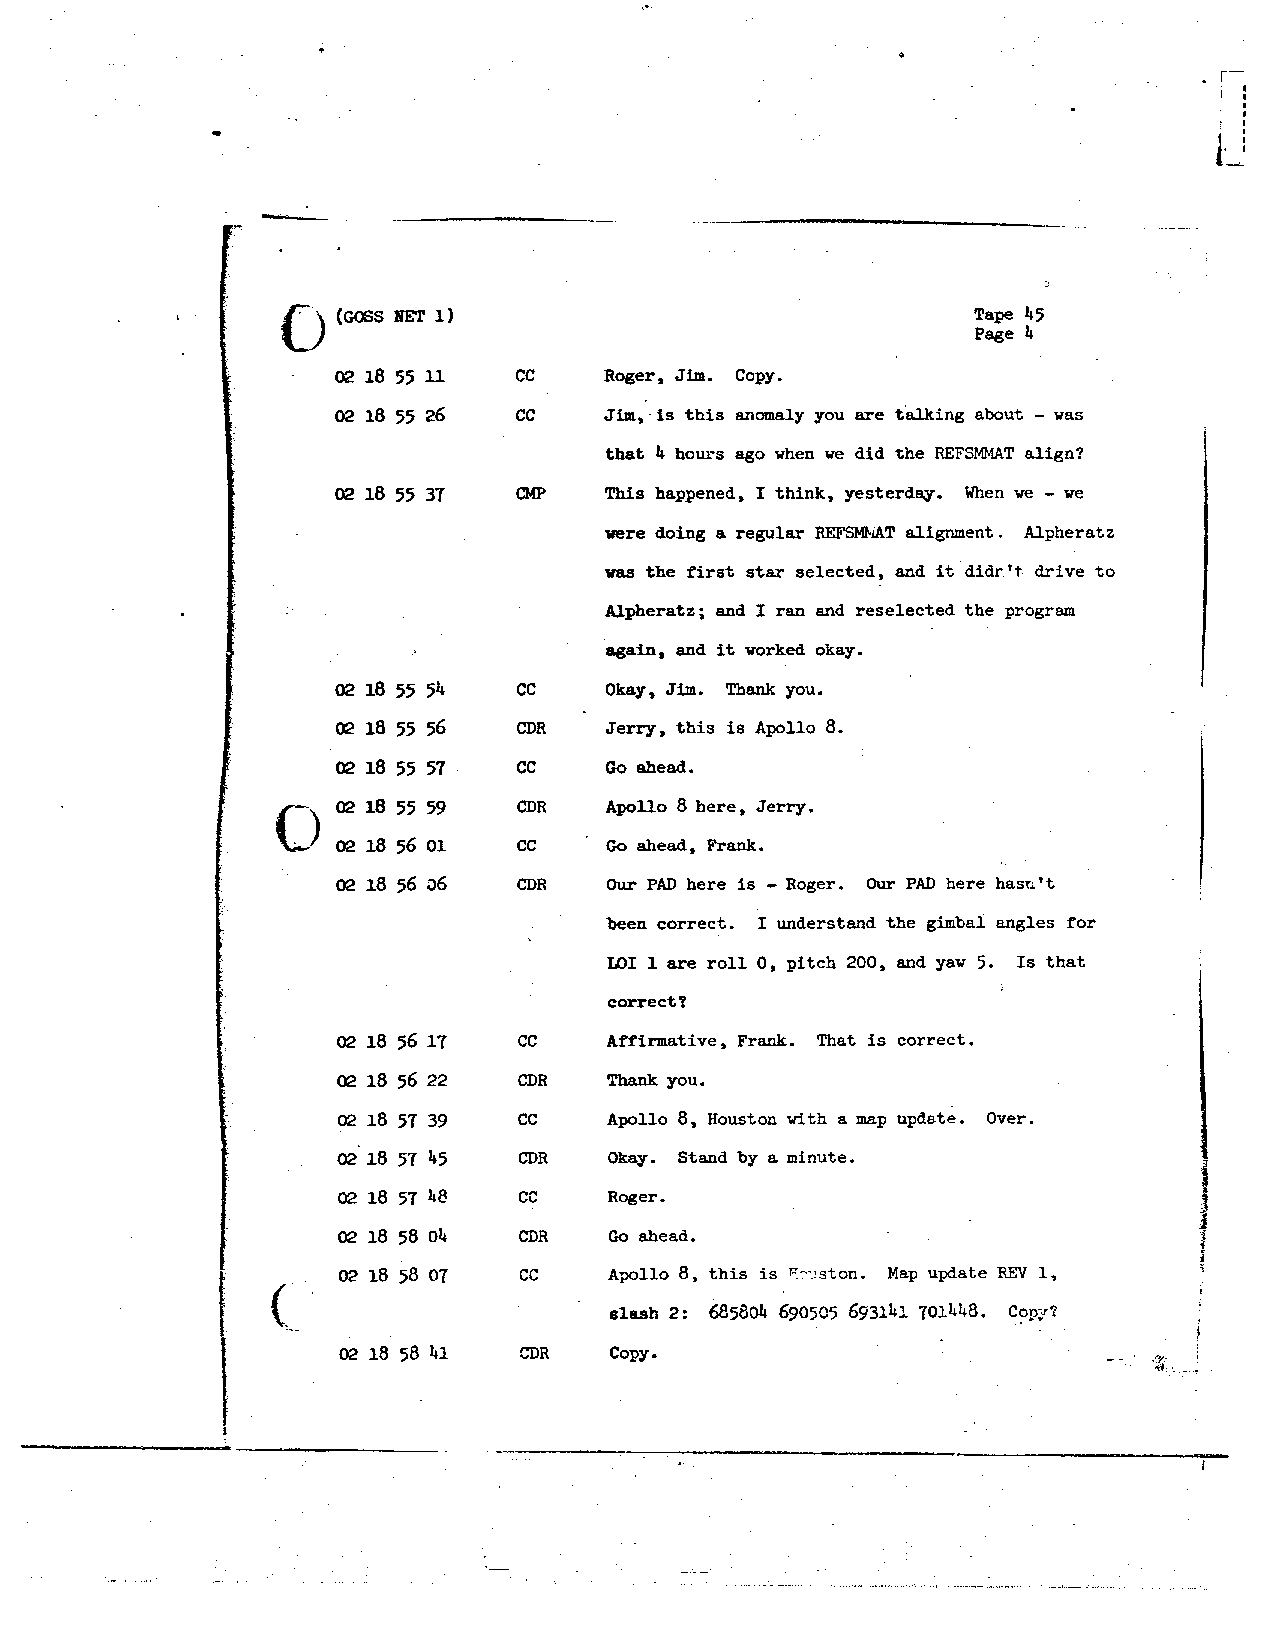 Page 343 of Apollo 8’s original transcript